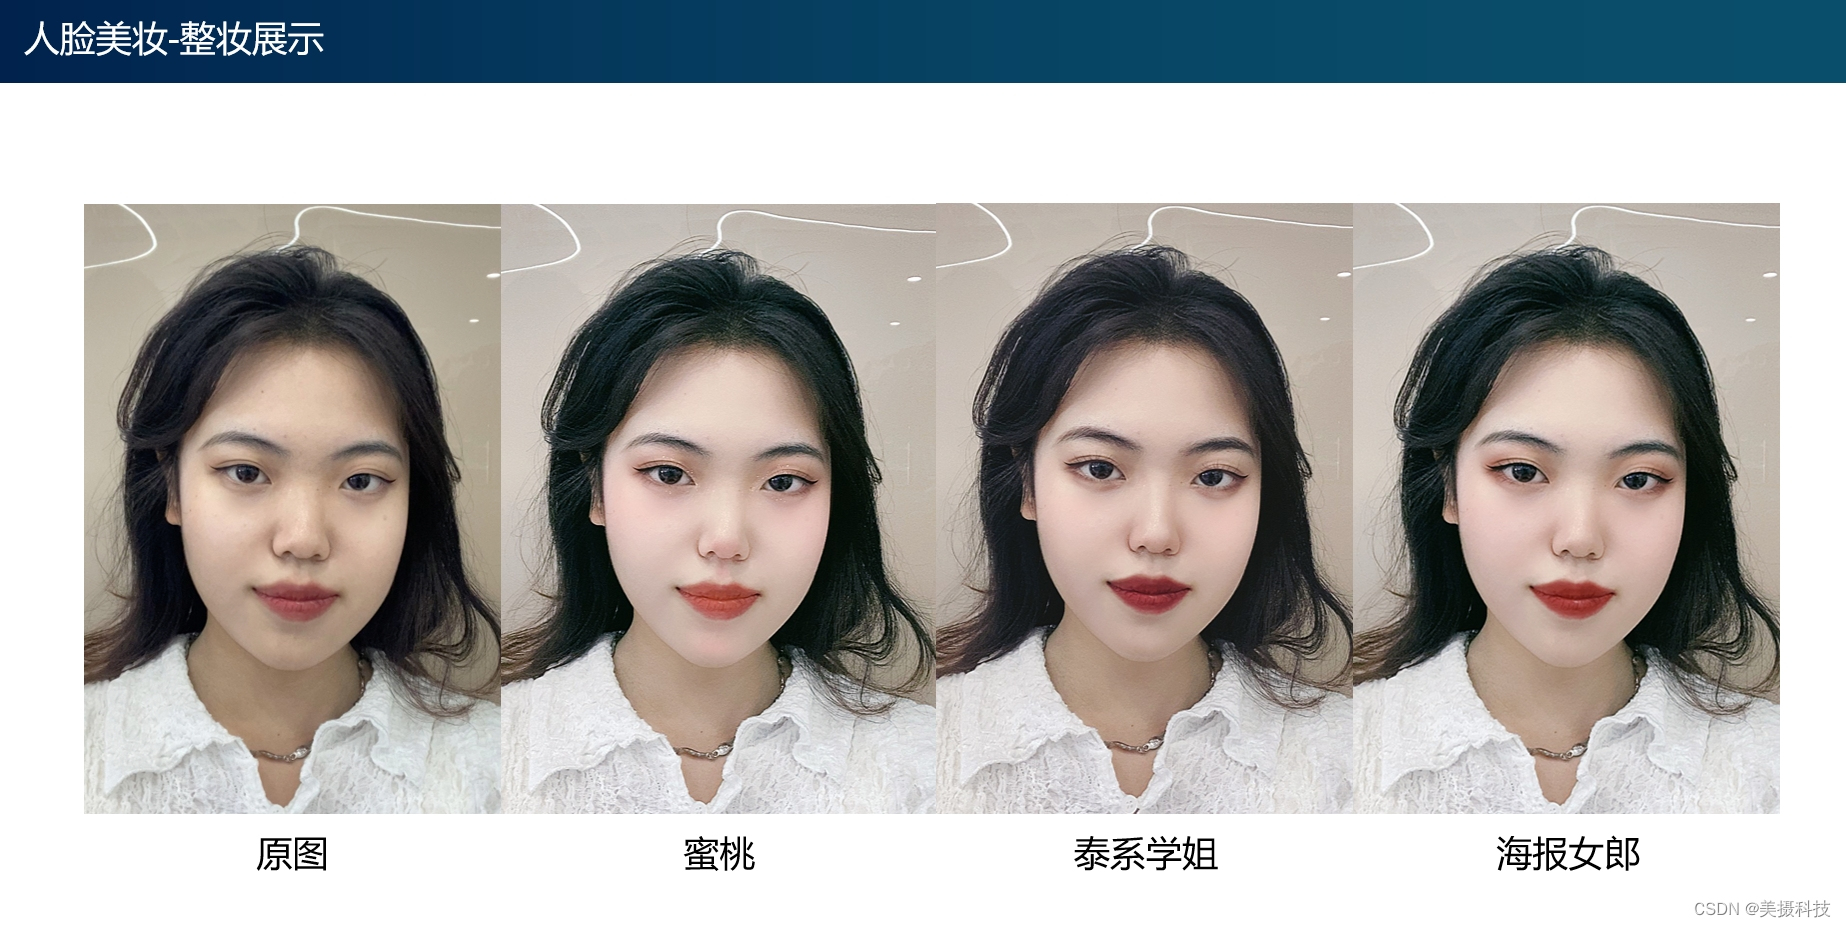 AR人脸美妆SDK解决方案，让妆容更加贴合个人风格